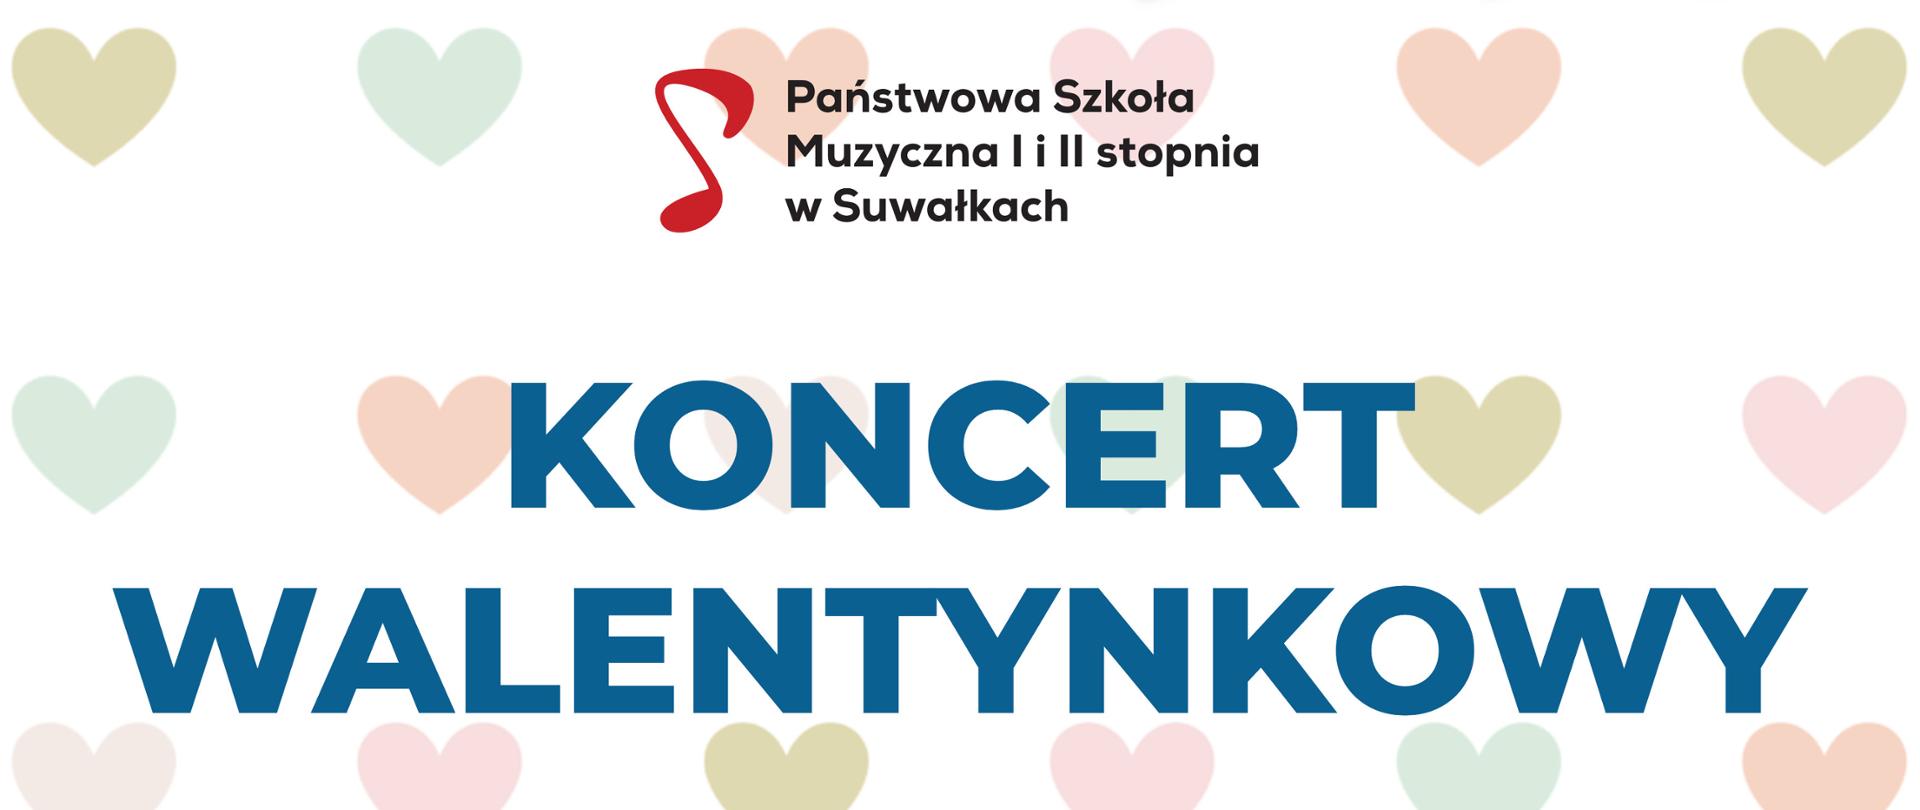 Plakat reklamujący Koncert walentynkowy dla SOSW nr 1 w Suwałkach 13 lutego 2023 w PSM w Suwałkach. W tle serduszka różnego koloru. Na pierwszym planie tekst o koncercie.